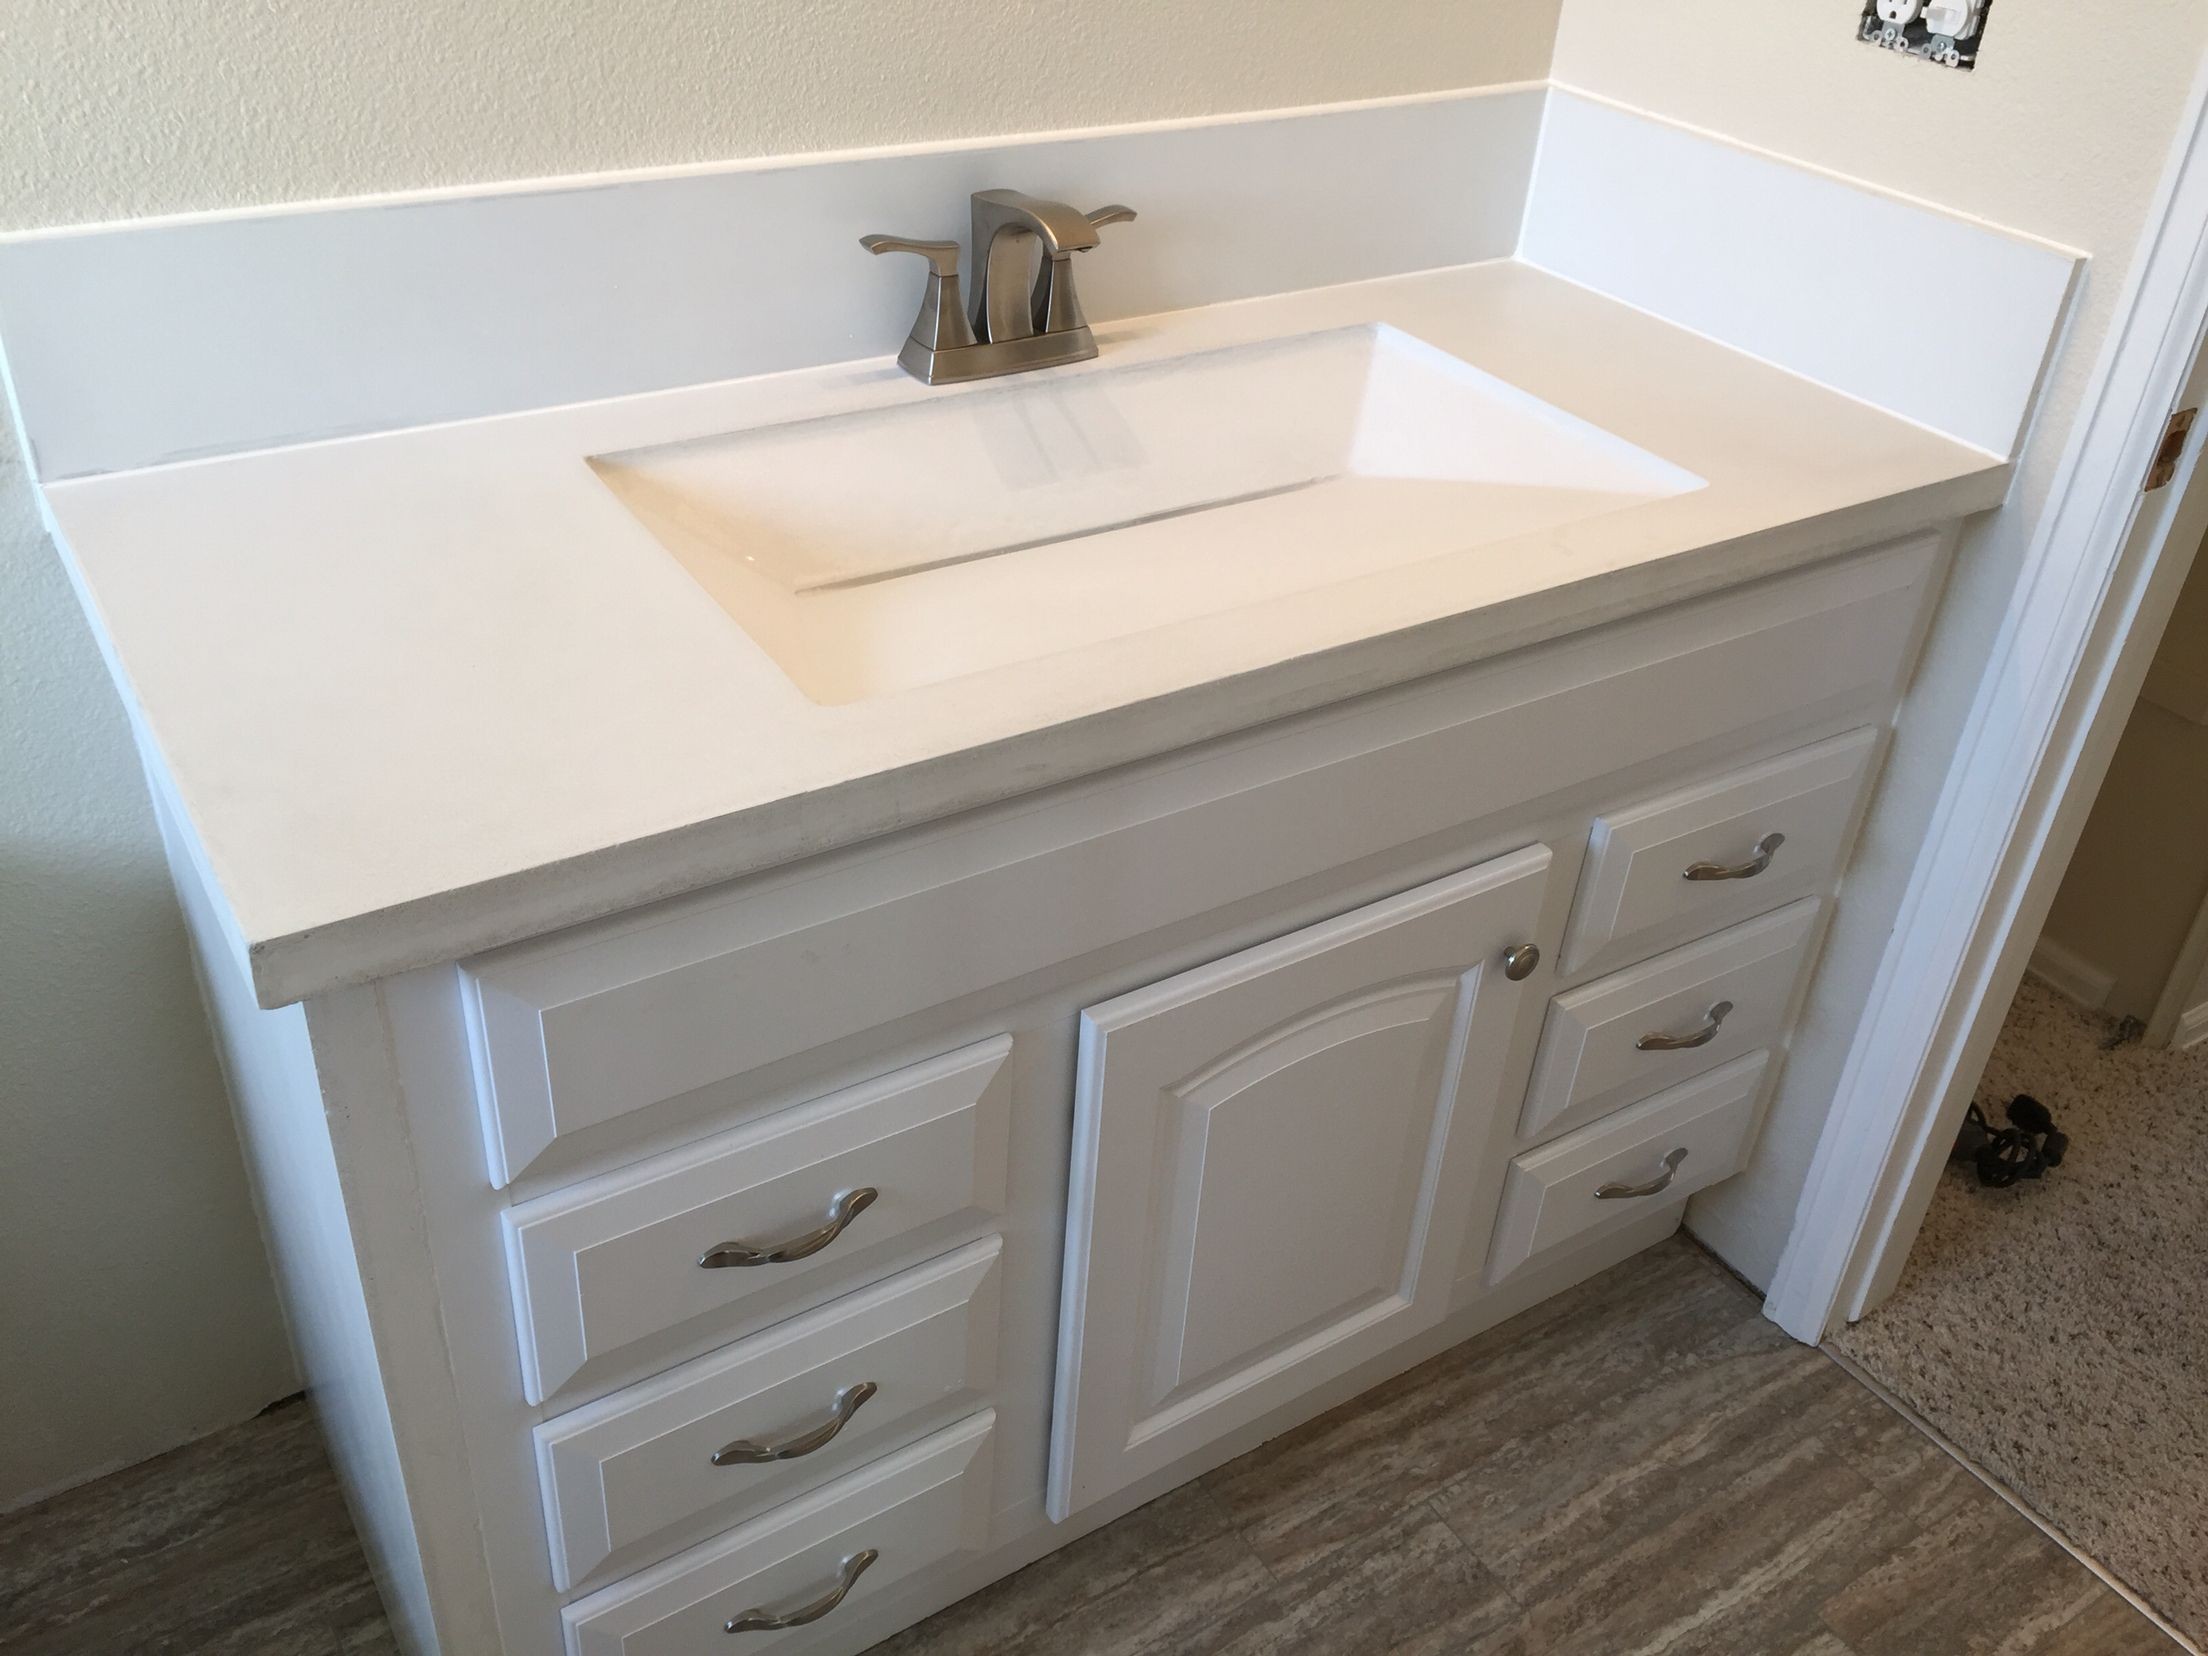 preformed bathroom sink countertop